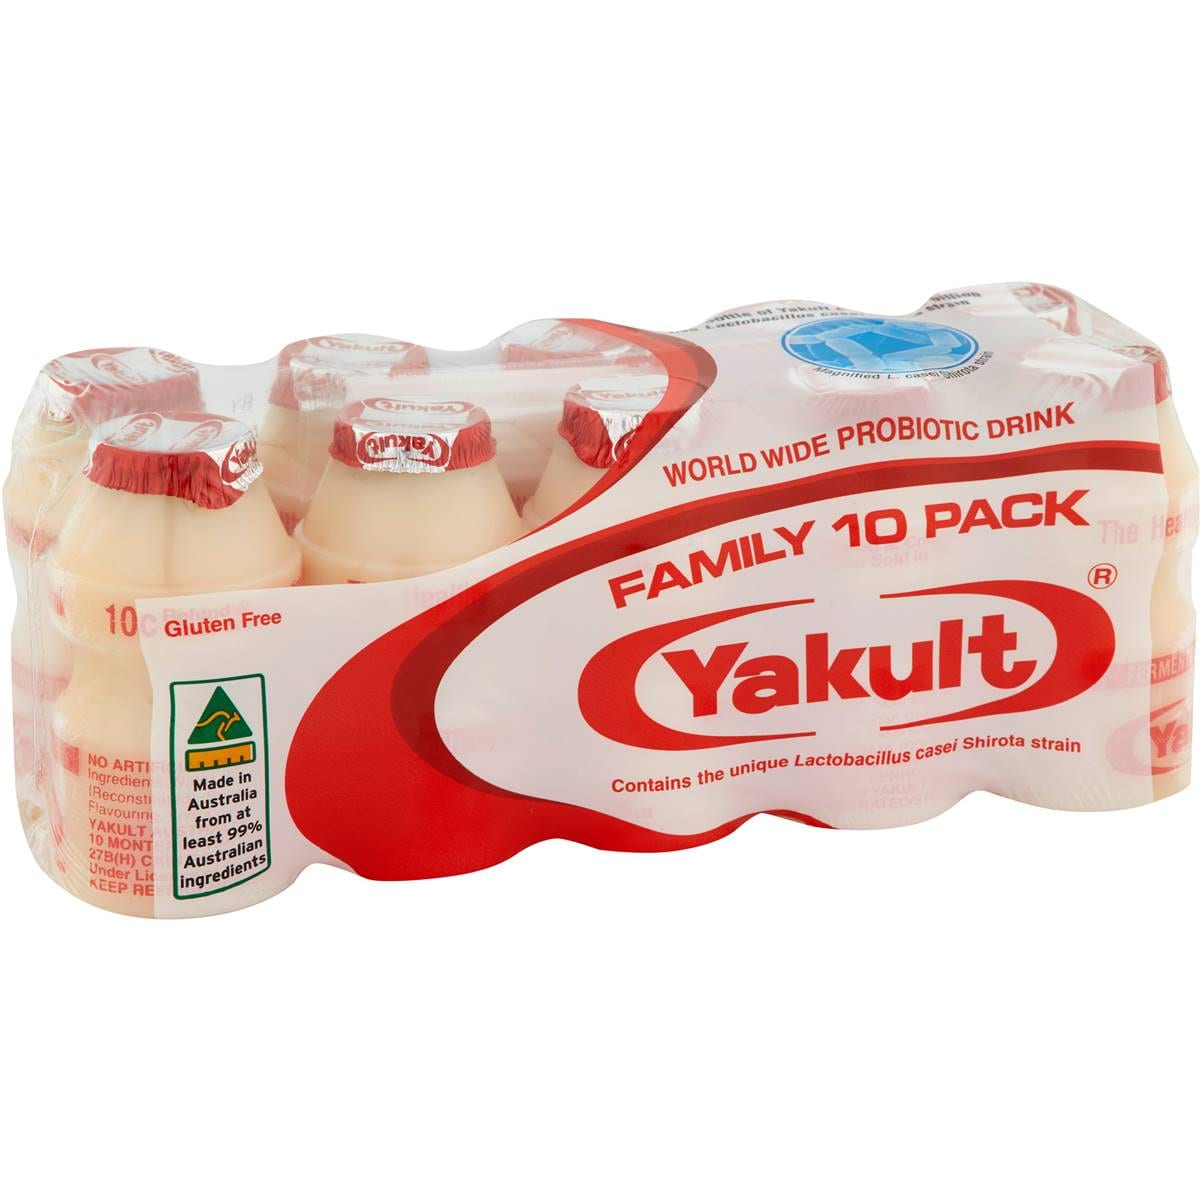 [Fresh]-Yakult-Probiotic-Drink-65ml*10-Bottles/-Pack-1